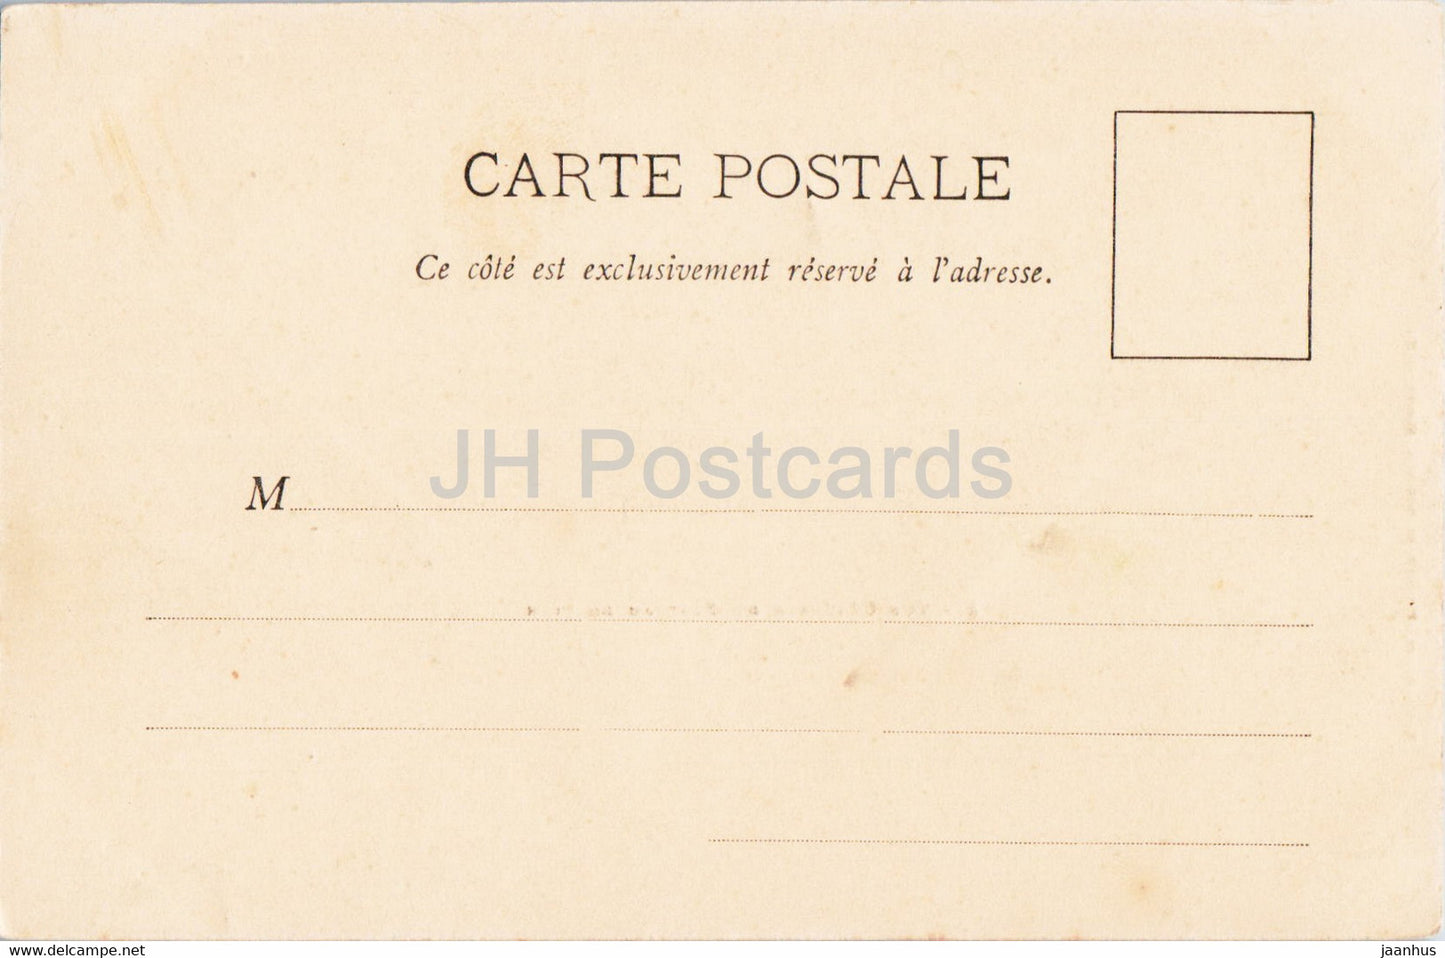 Vue Generale du Plateau de Sion - 6 - old postcard - France - unused